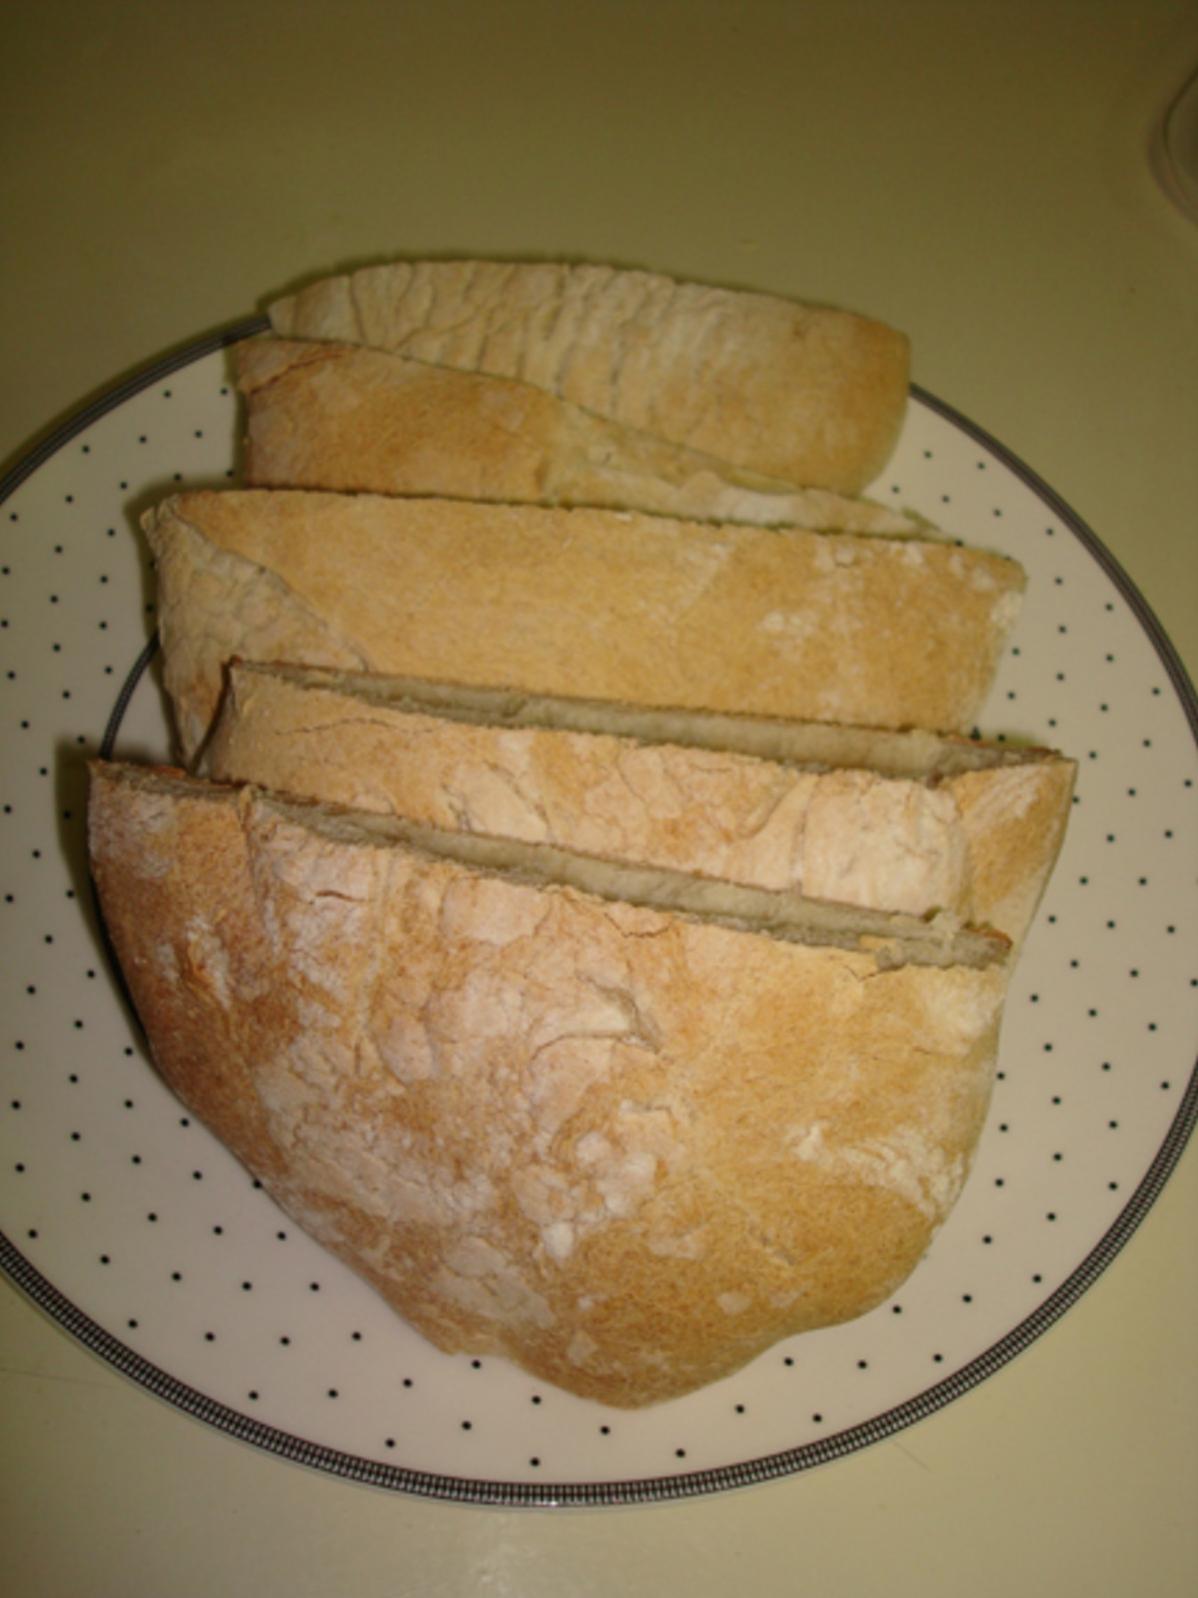  Mignon's Pita Bread - A Middle Eastern classic!